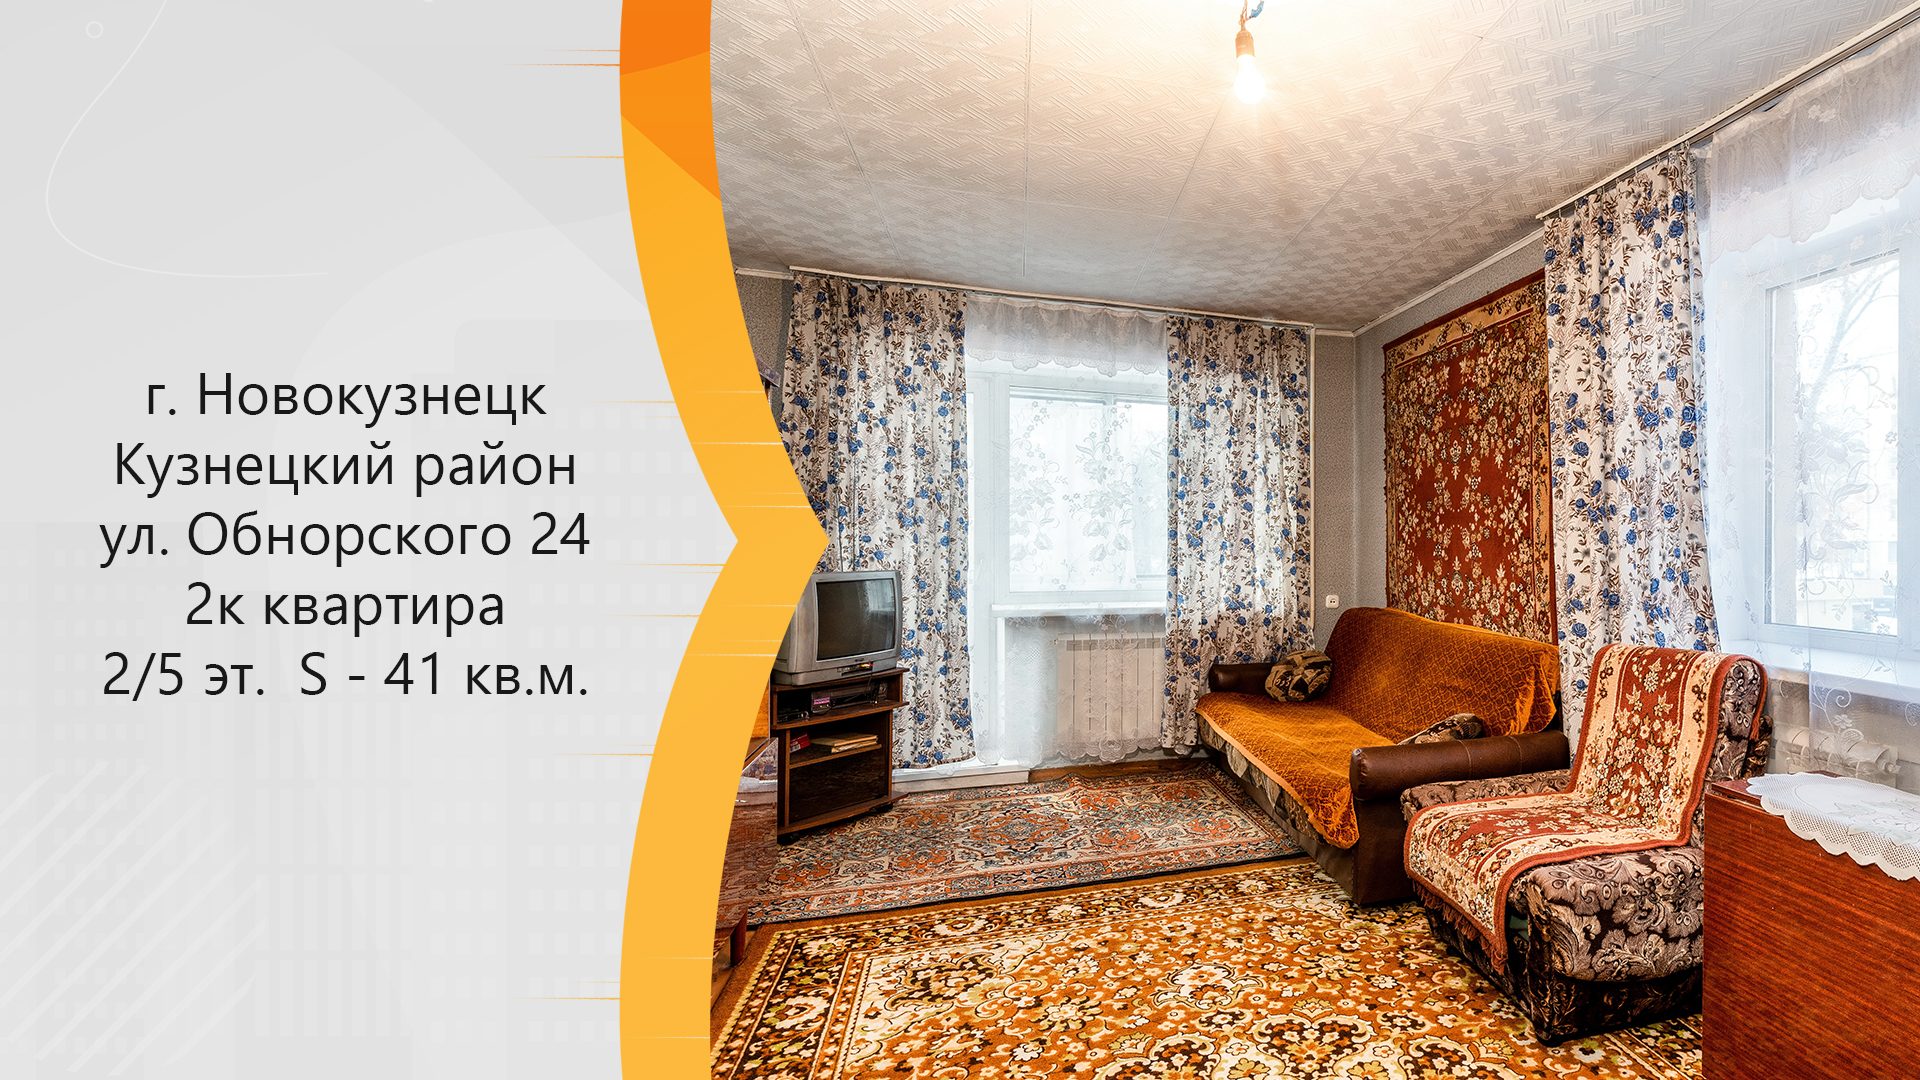 Квартиры в новокузнецке купить вторичное. Продается квартира объявление. Новокузнецк квартиры в Кузнецком районе продажа.